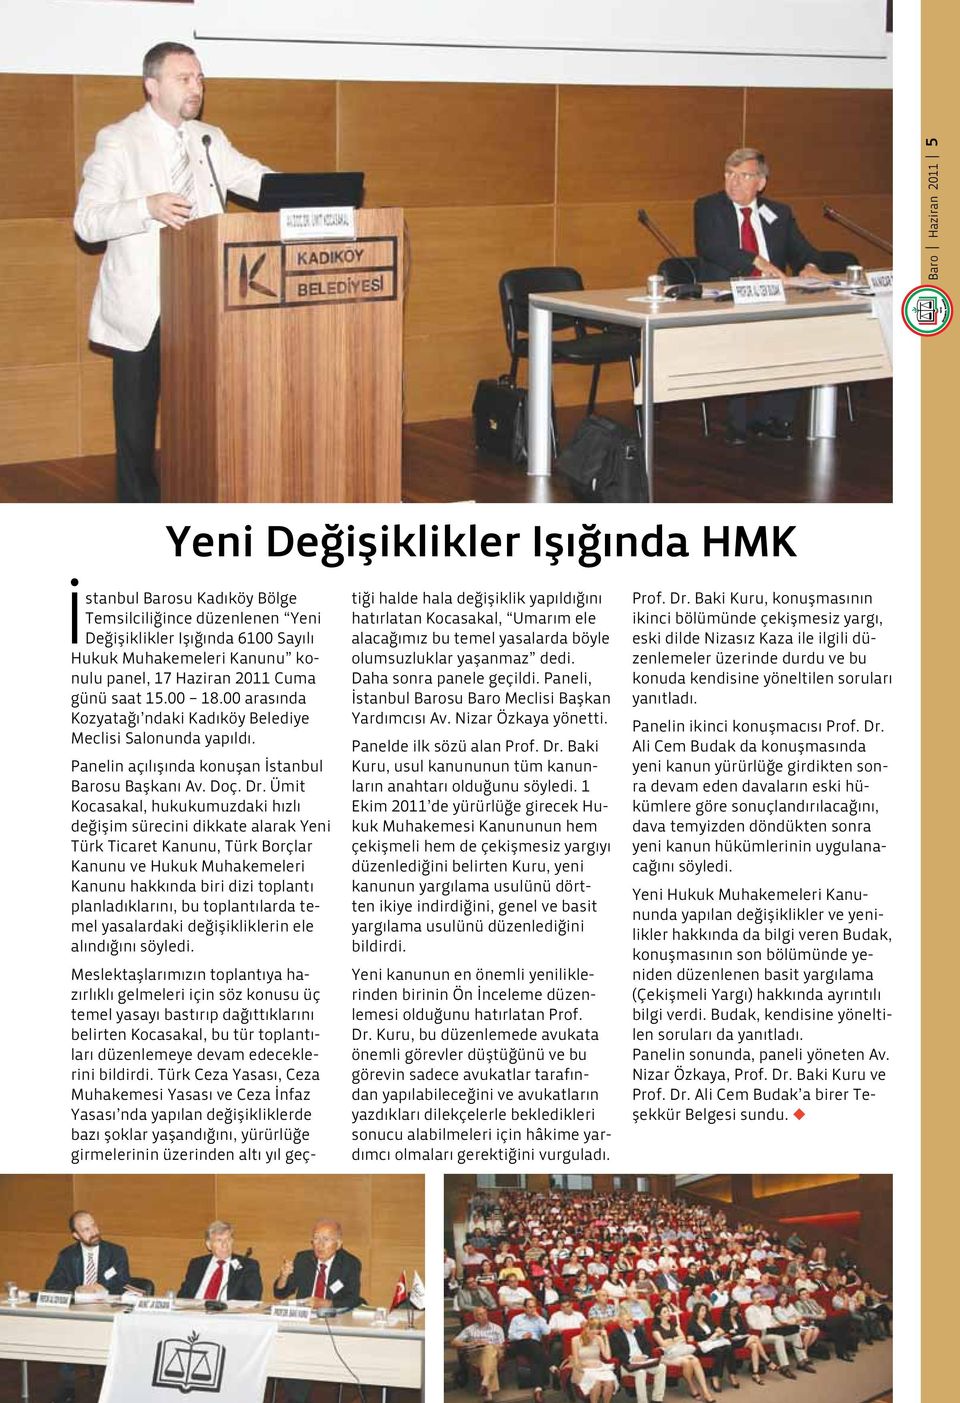 Ümit Kocasakal, hukukumuzdaki hızlı değişim sürecini dikkate alarak Yeni Türk Ticaret Kanunu, Türk Borçlar Kanunu ve Hukuk Muhakemeleri Kanunu hakkında biri dizi toplantı planladıklarını, bu